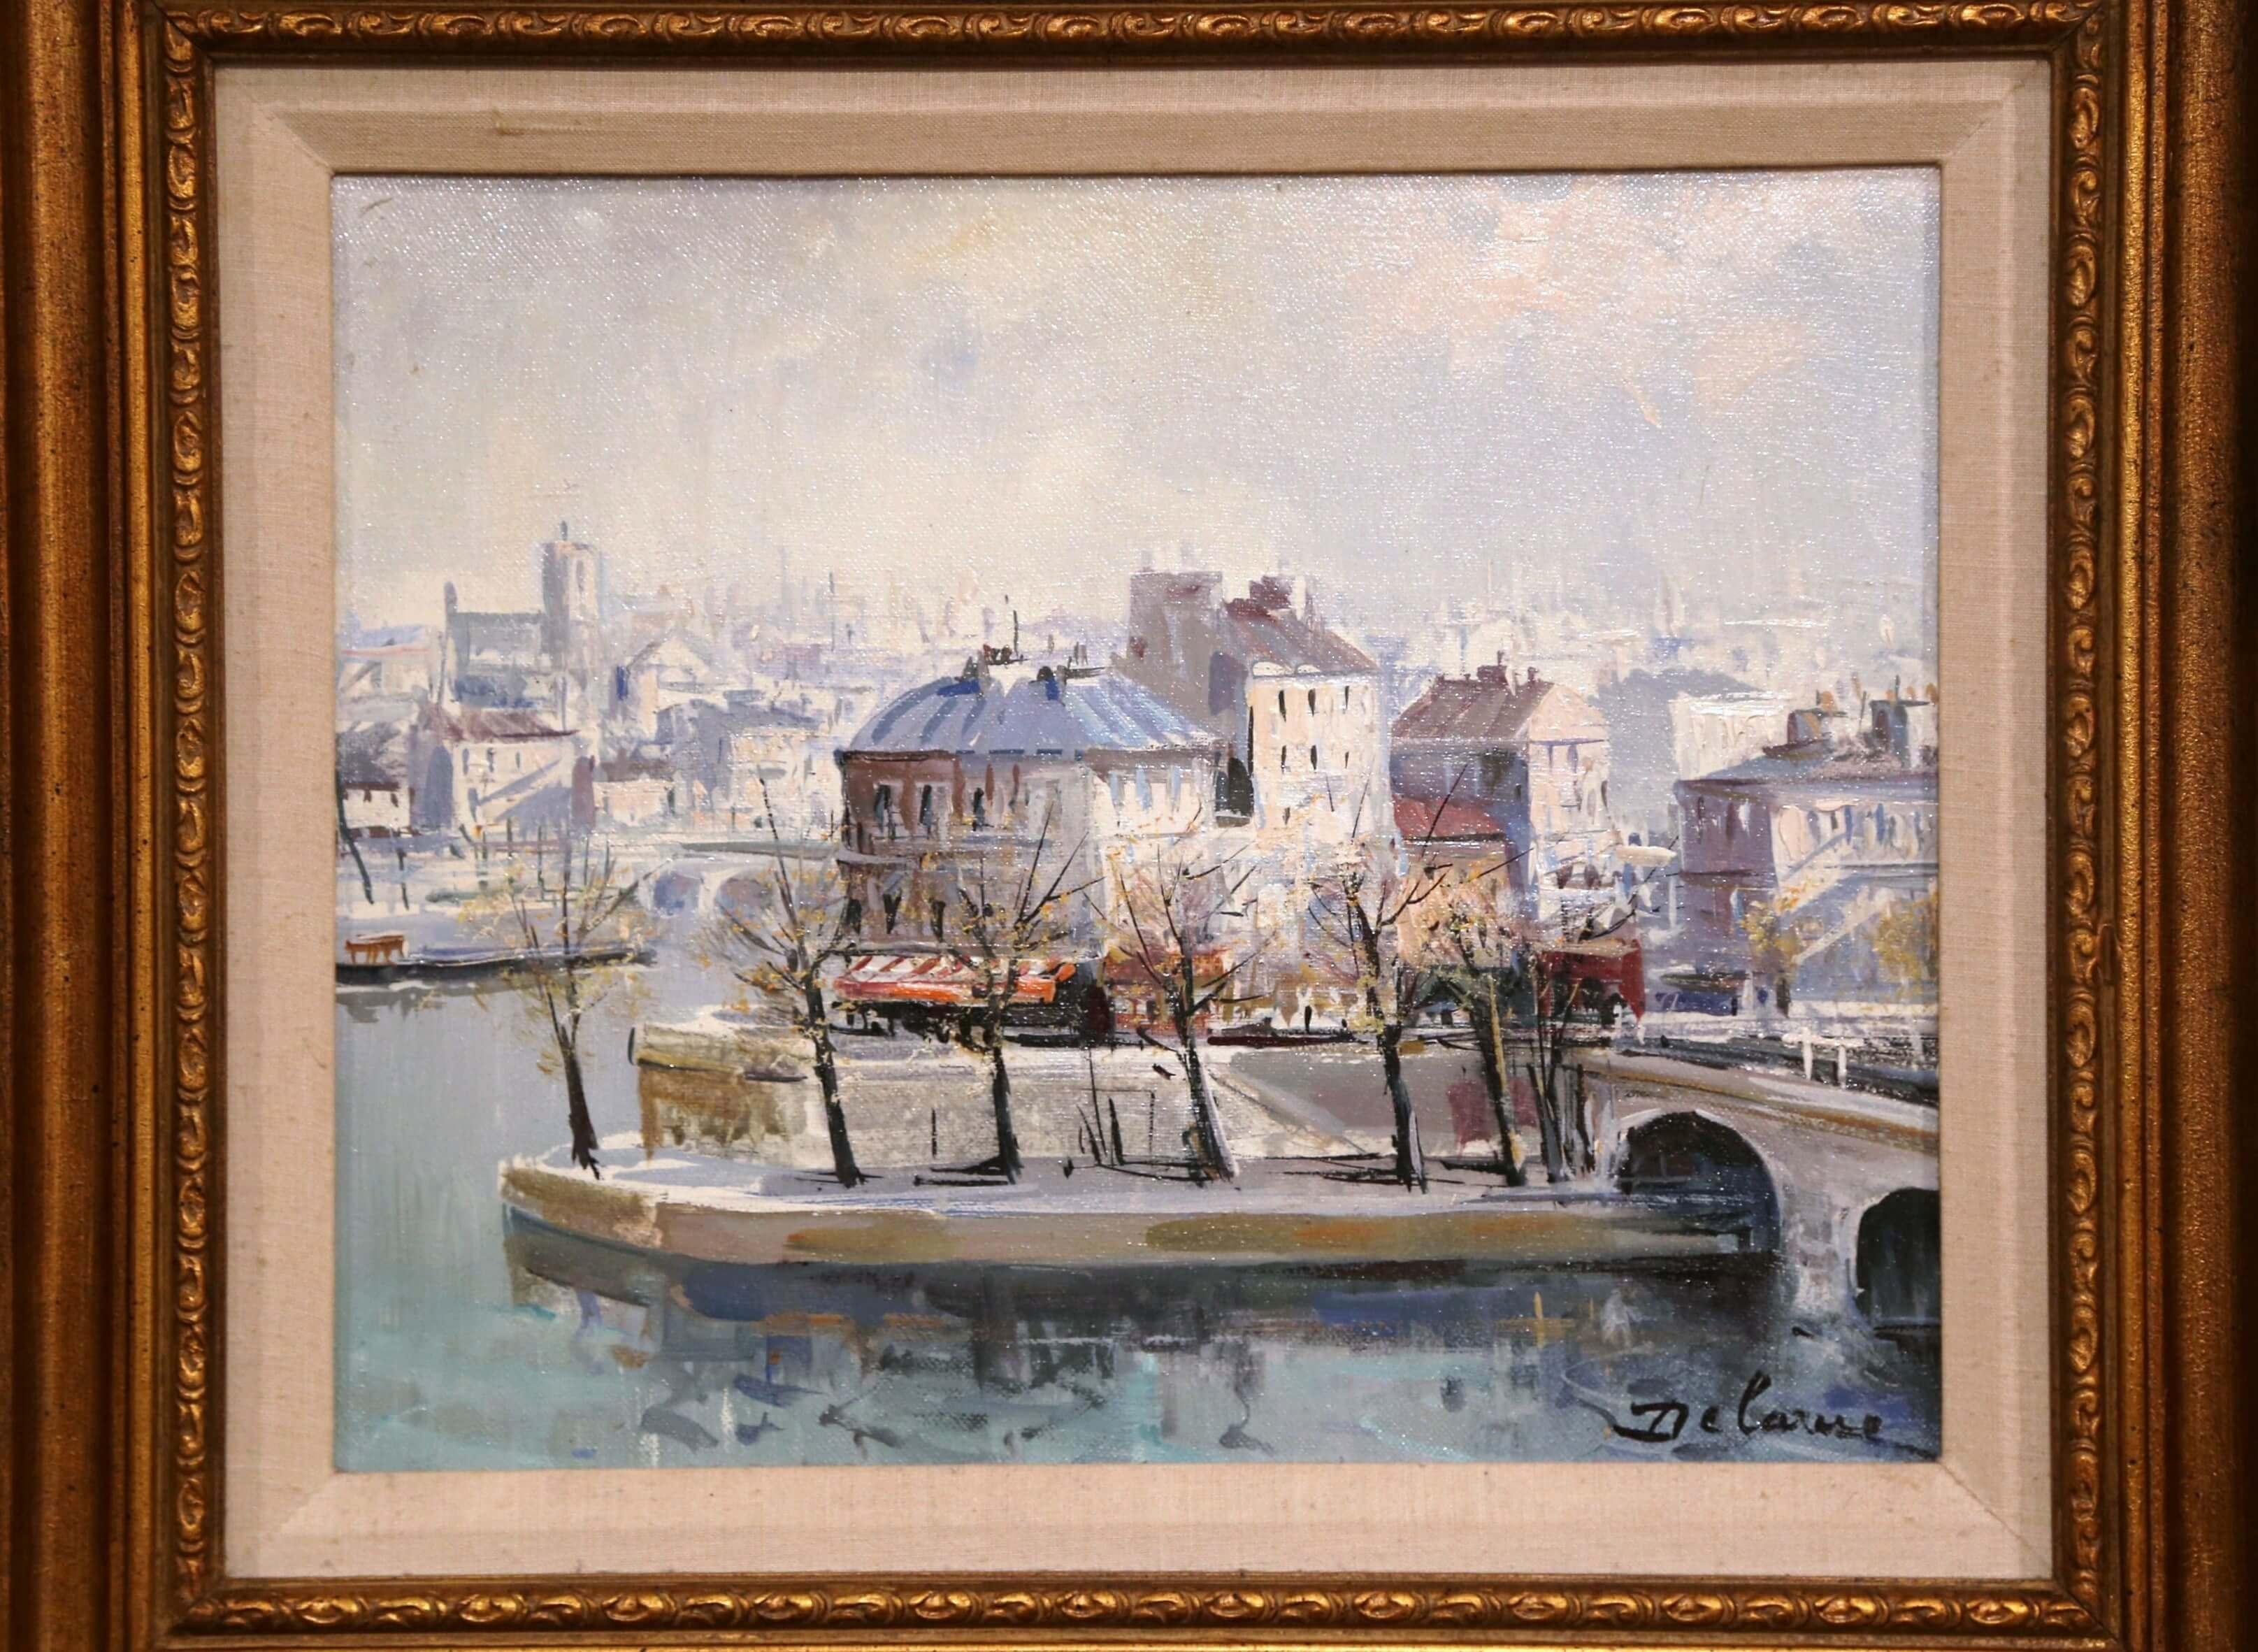 Holen Sie sich mit diesem Ölgemälde des französischen Malers Lucien Delarue (um 1970) einen Blick auf Paris in Ihr Zuhause. Dieses detaillierte, architektonische Gemälde befindet sich in einem geschnitzten, vergoldeten Rahmen und ist in der rechten